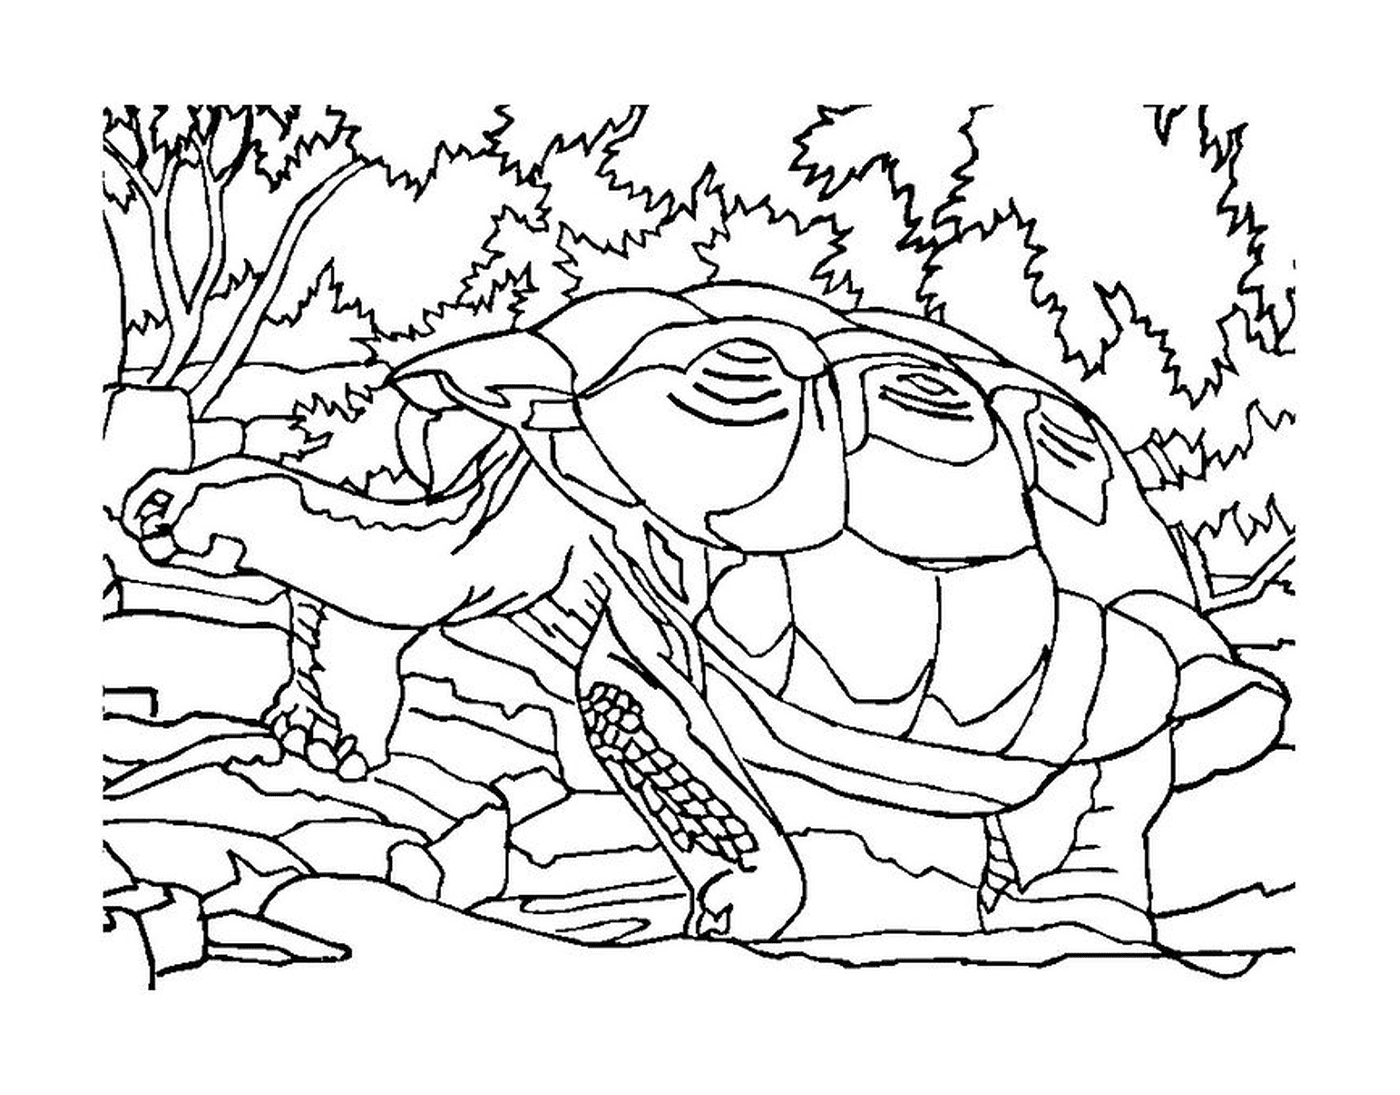  Tartaruga na floresta 